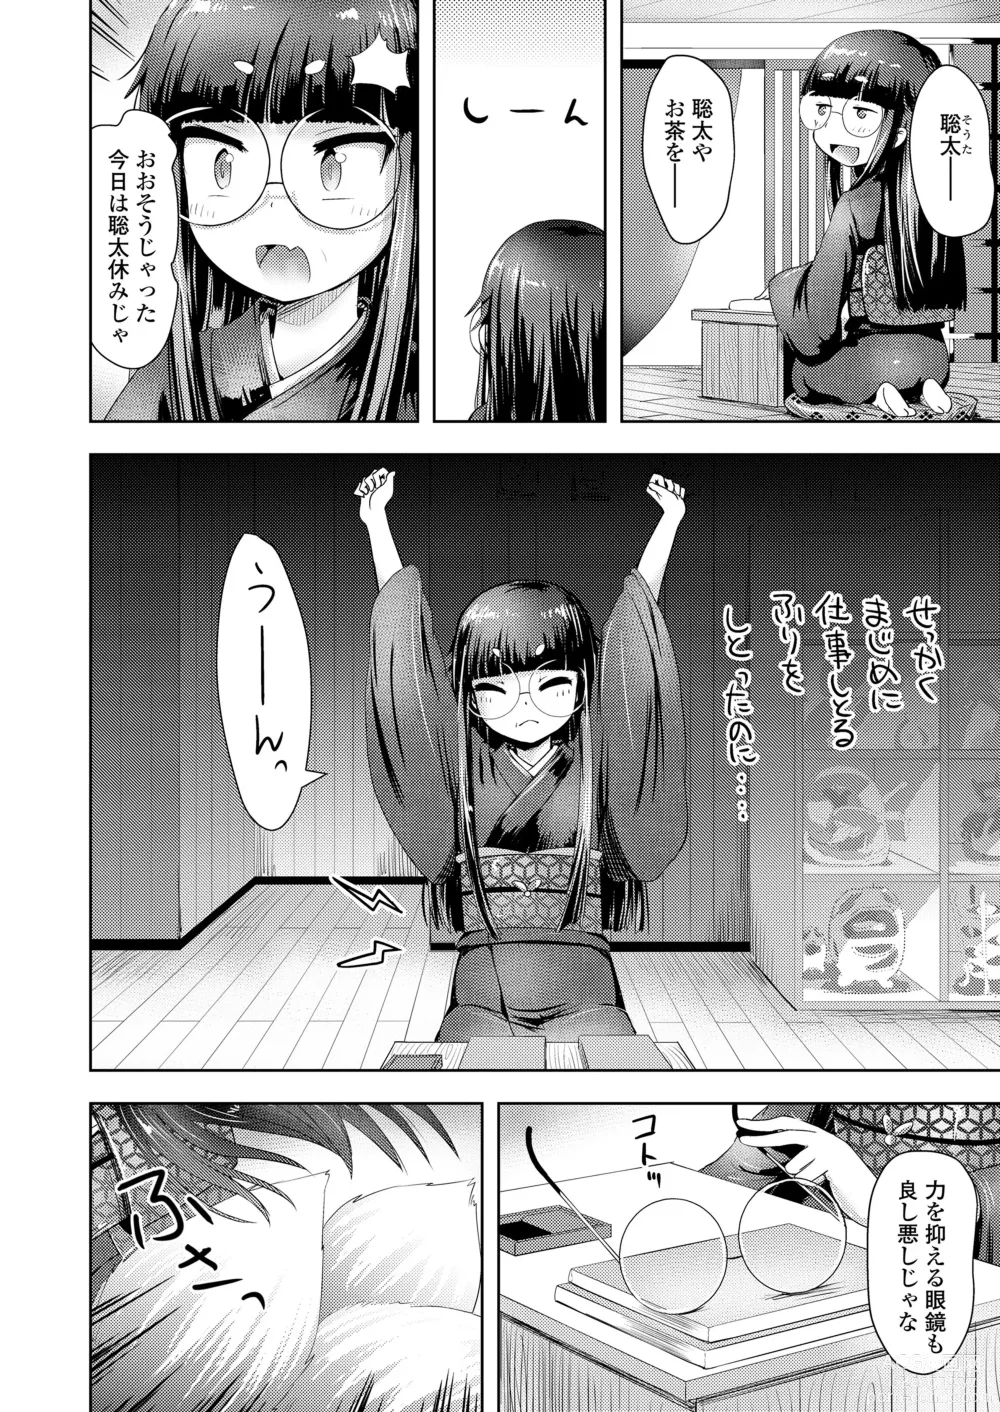 Page 174 of manga Towako Oboro Emaki 14